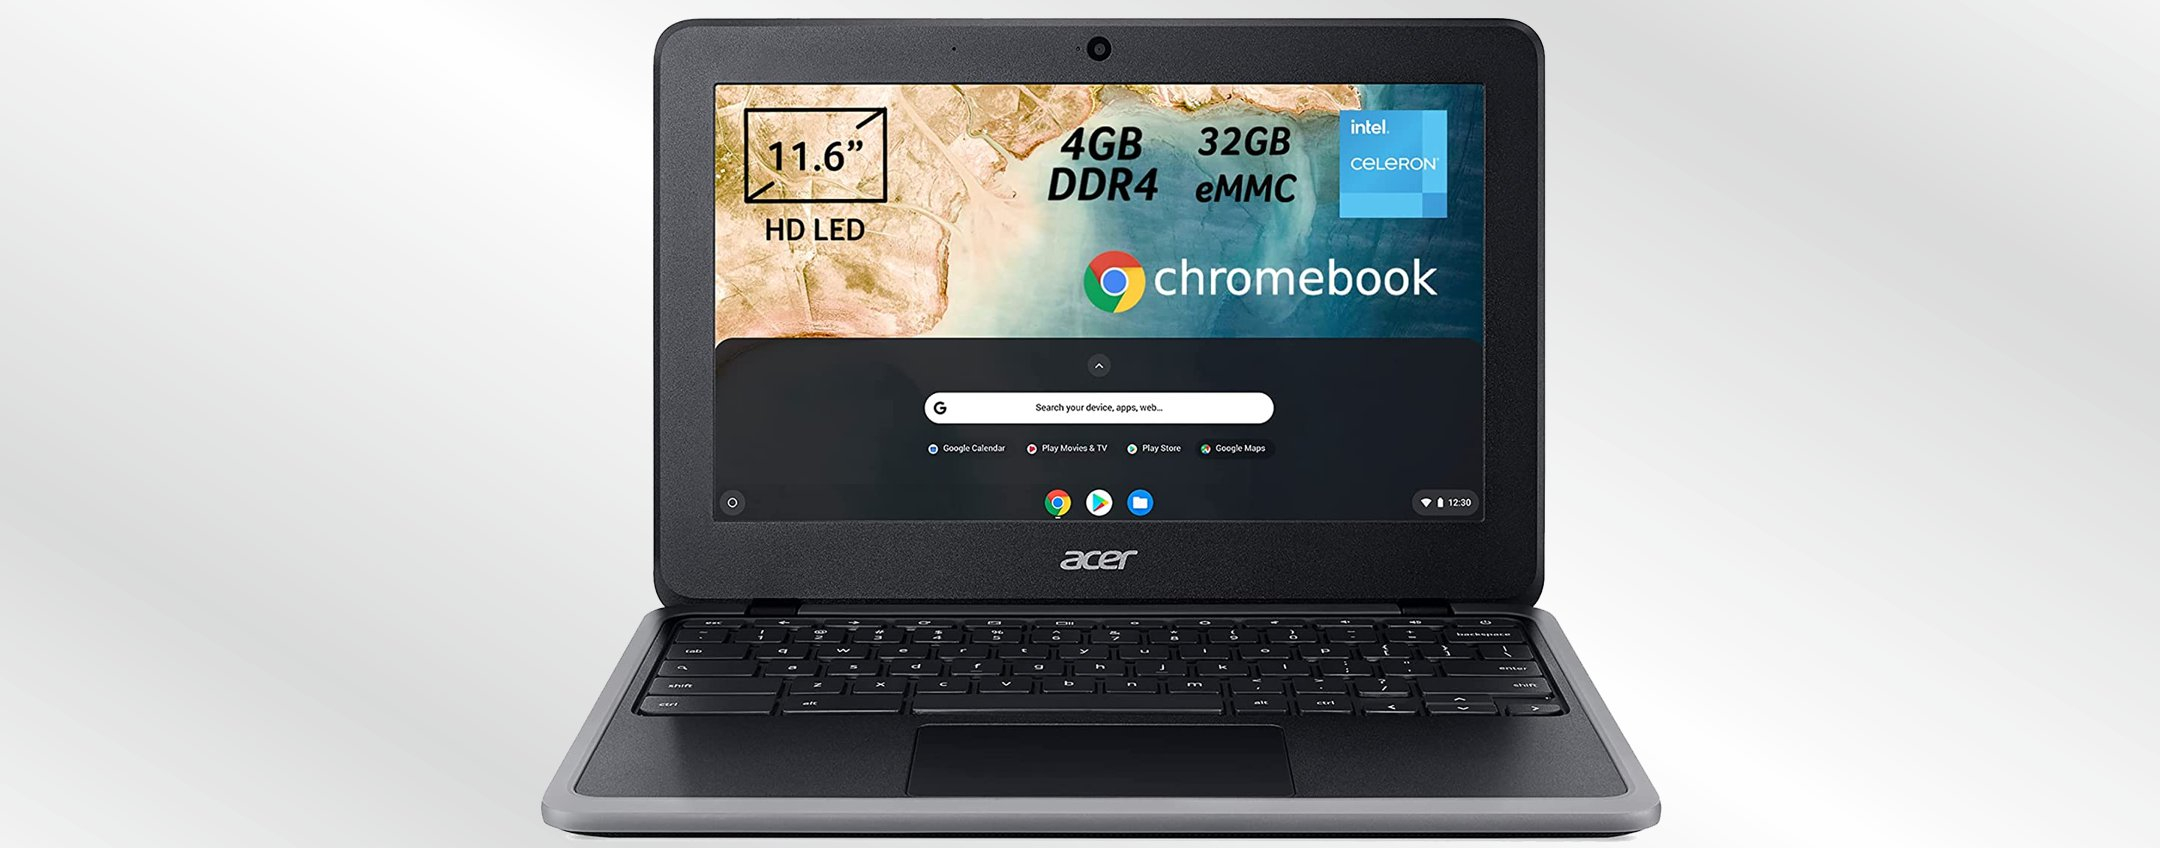 Amazon, il COLPO del giorno è questo Acer Chromebook scontato di 110€